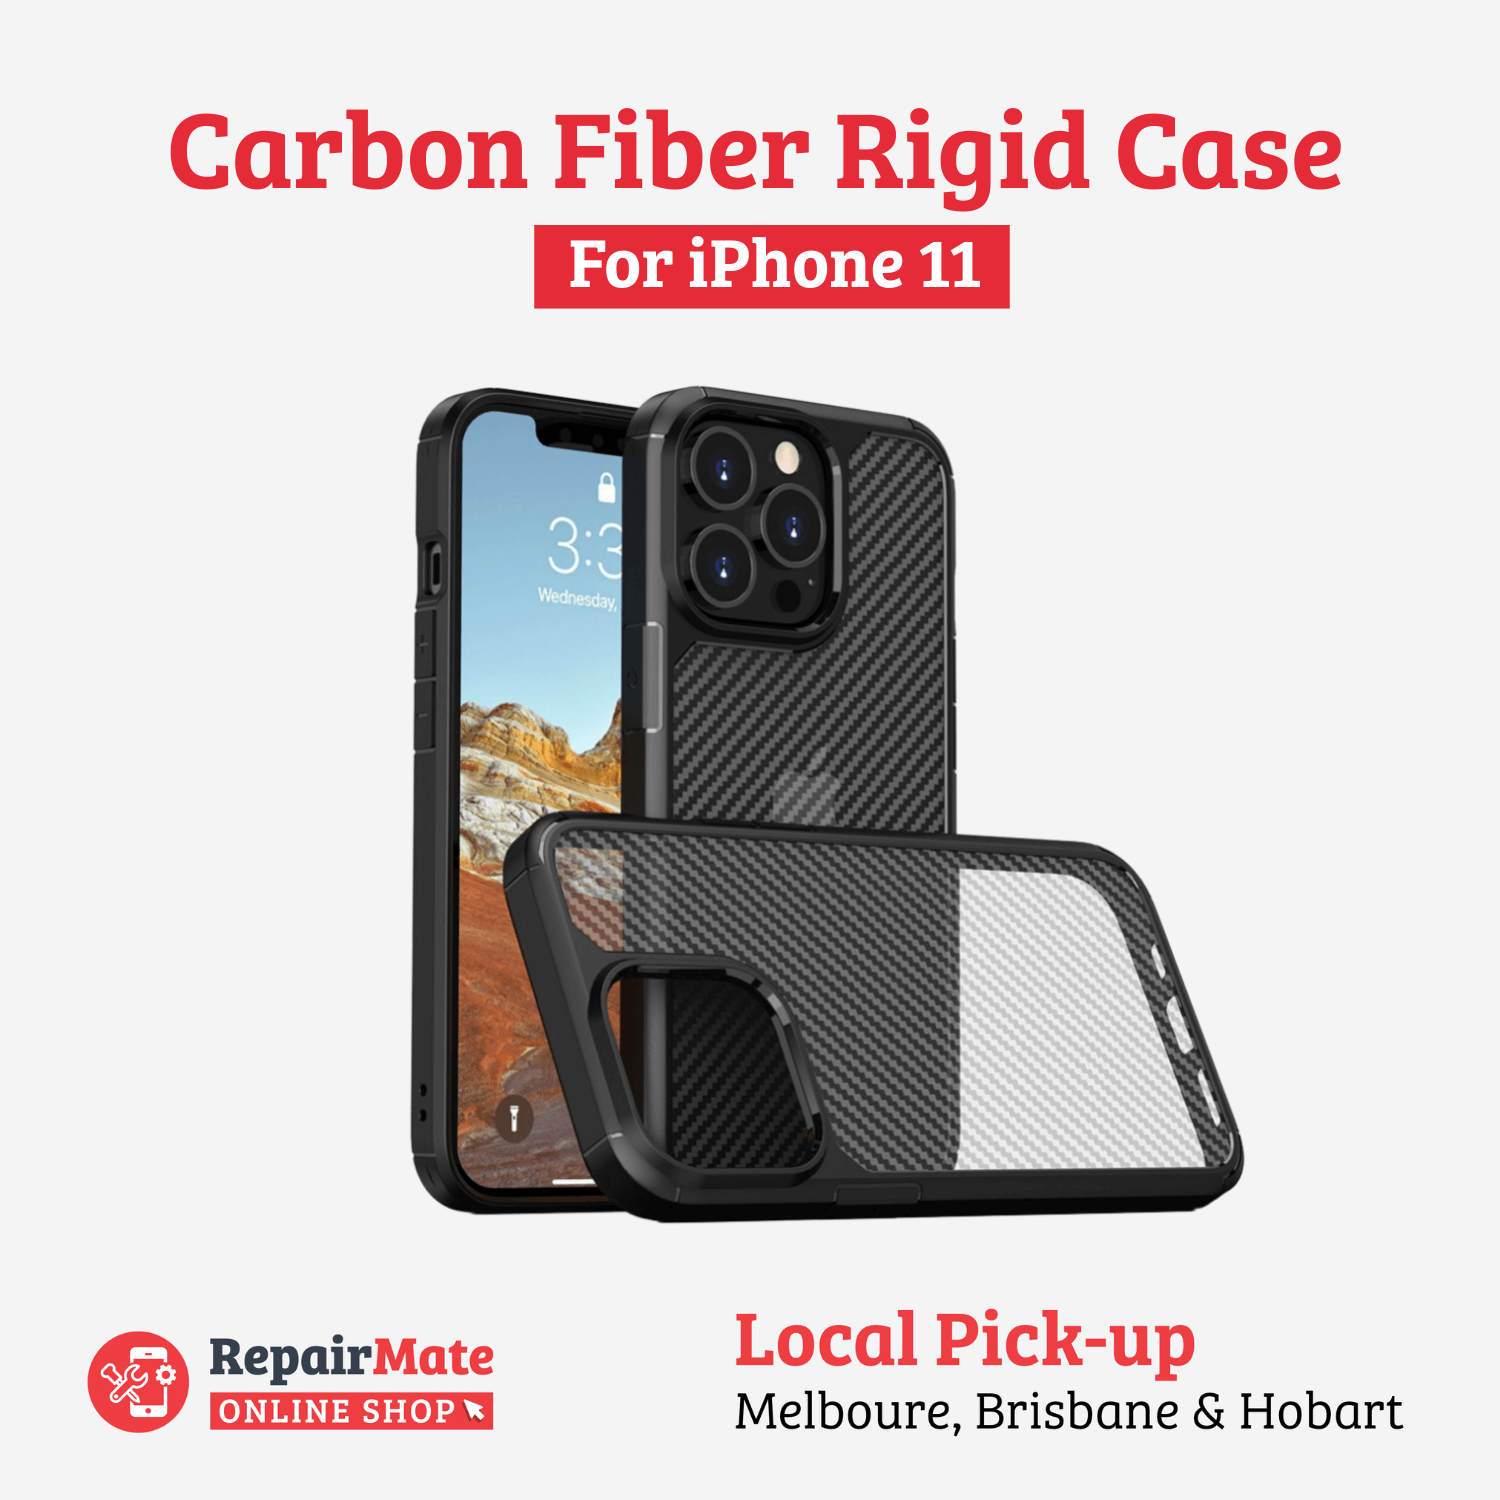 iPhone 11 Carbon Fiber Rigid Case Cover